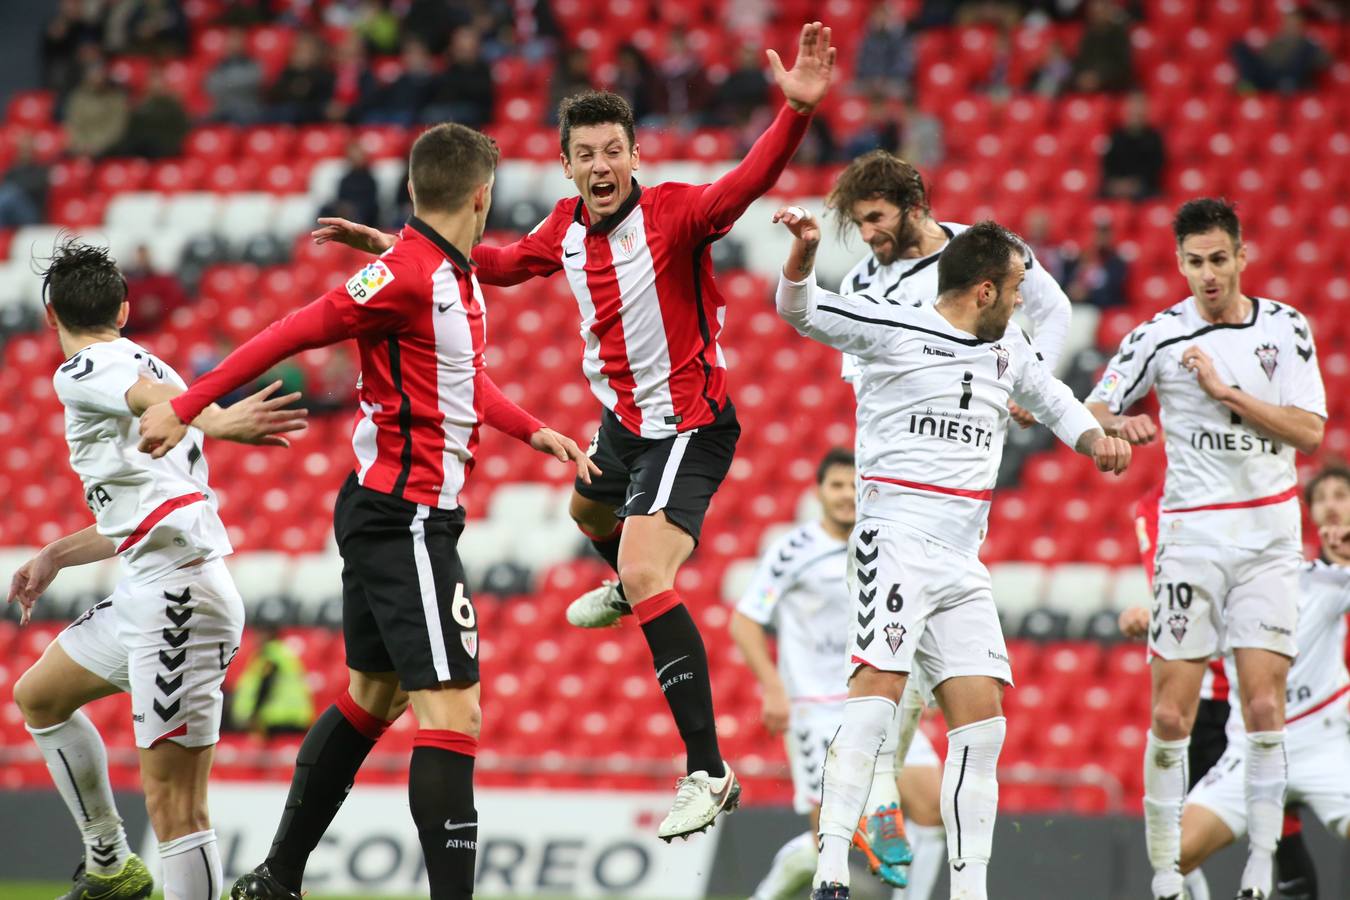 El Bilbao Athletic-Albacete, en imágenes